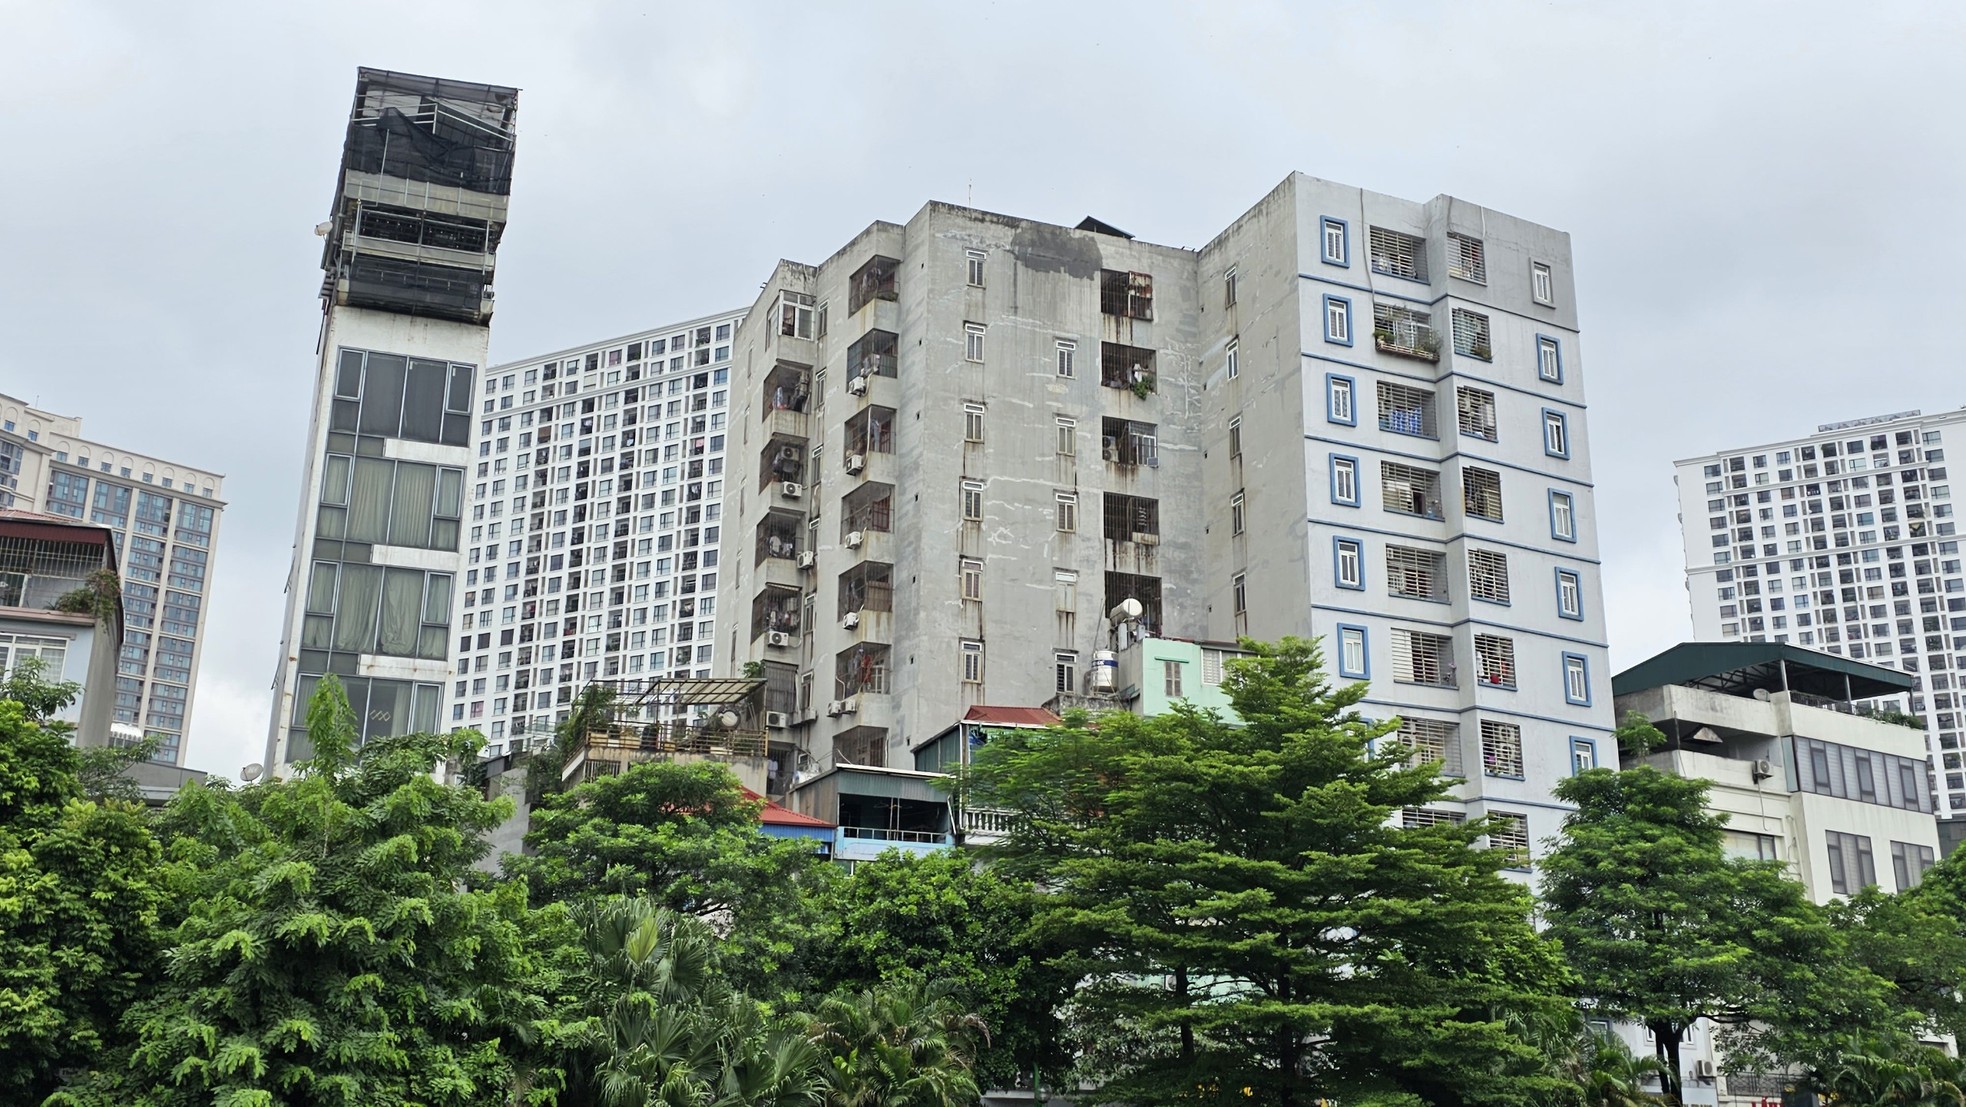 'Thủ phủ' chung cư mini gần nơi xảy ra vụ cháy kinh hoàng ở Hà Nội - Ảnh 10.